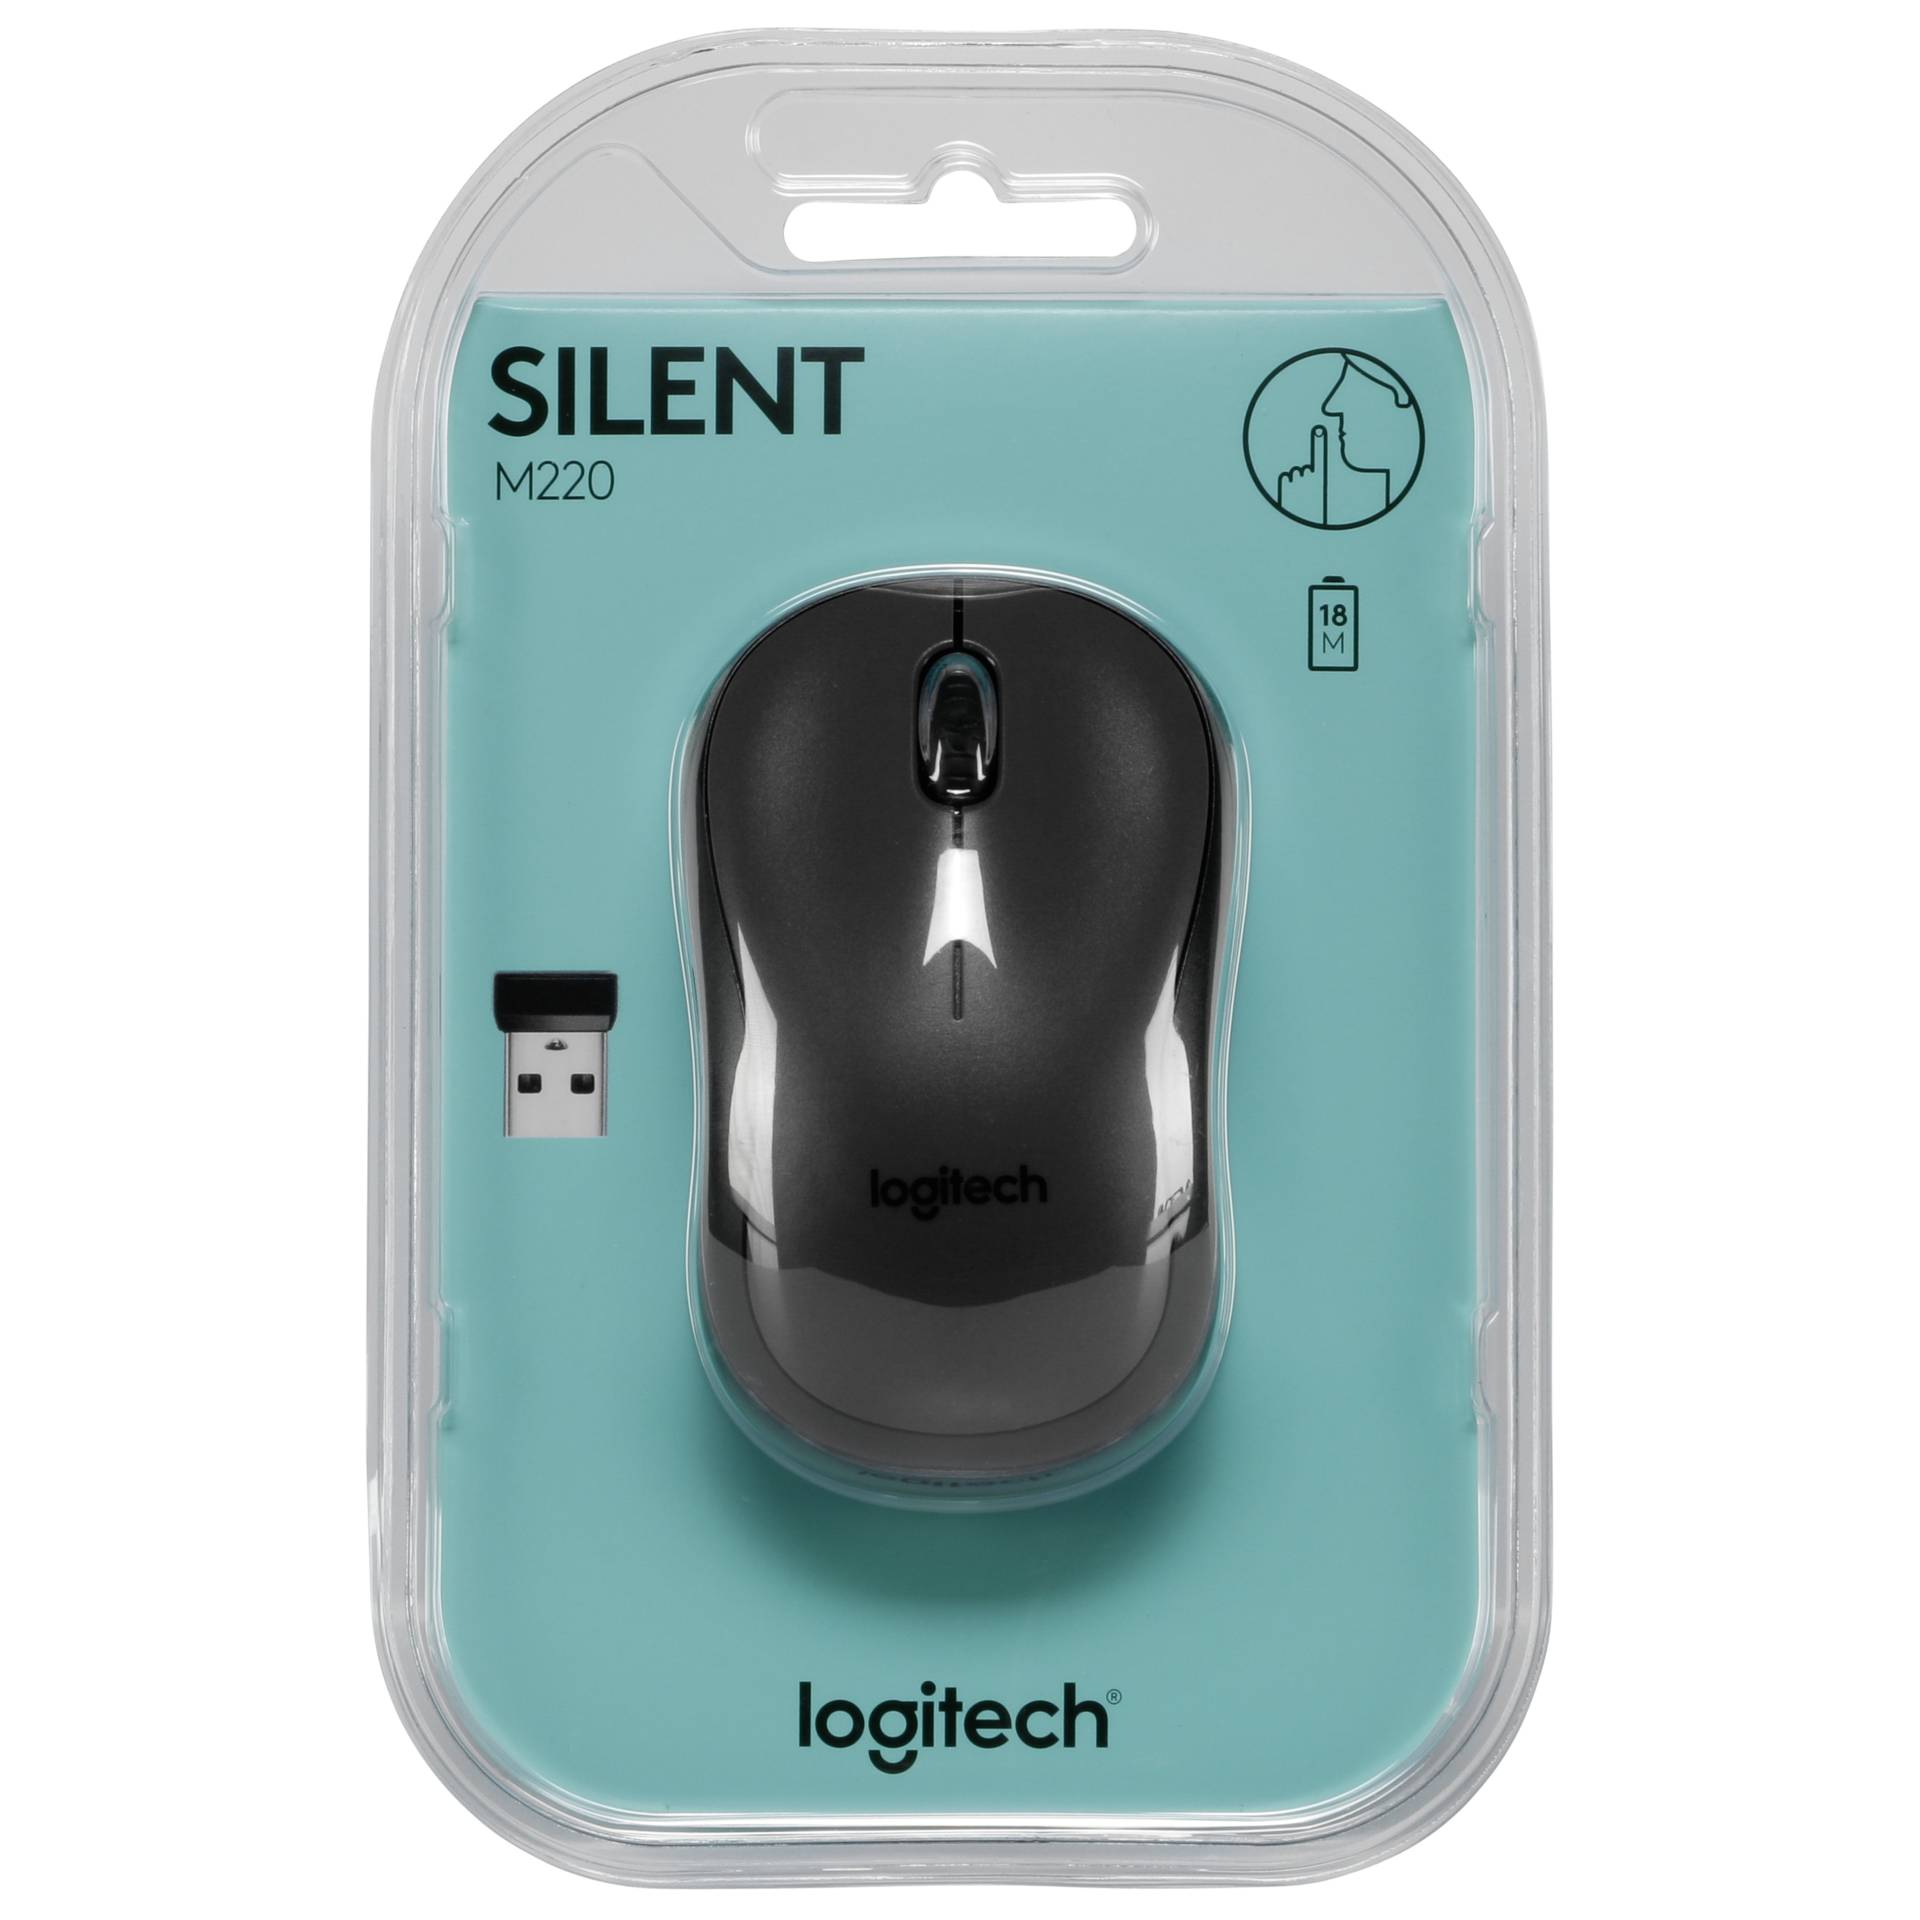 Logitech M220 Silent schwarz, Maus, beidhändig, kabellos (2.40GHz)